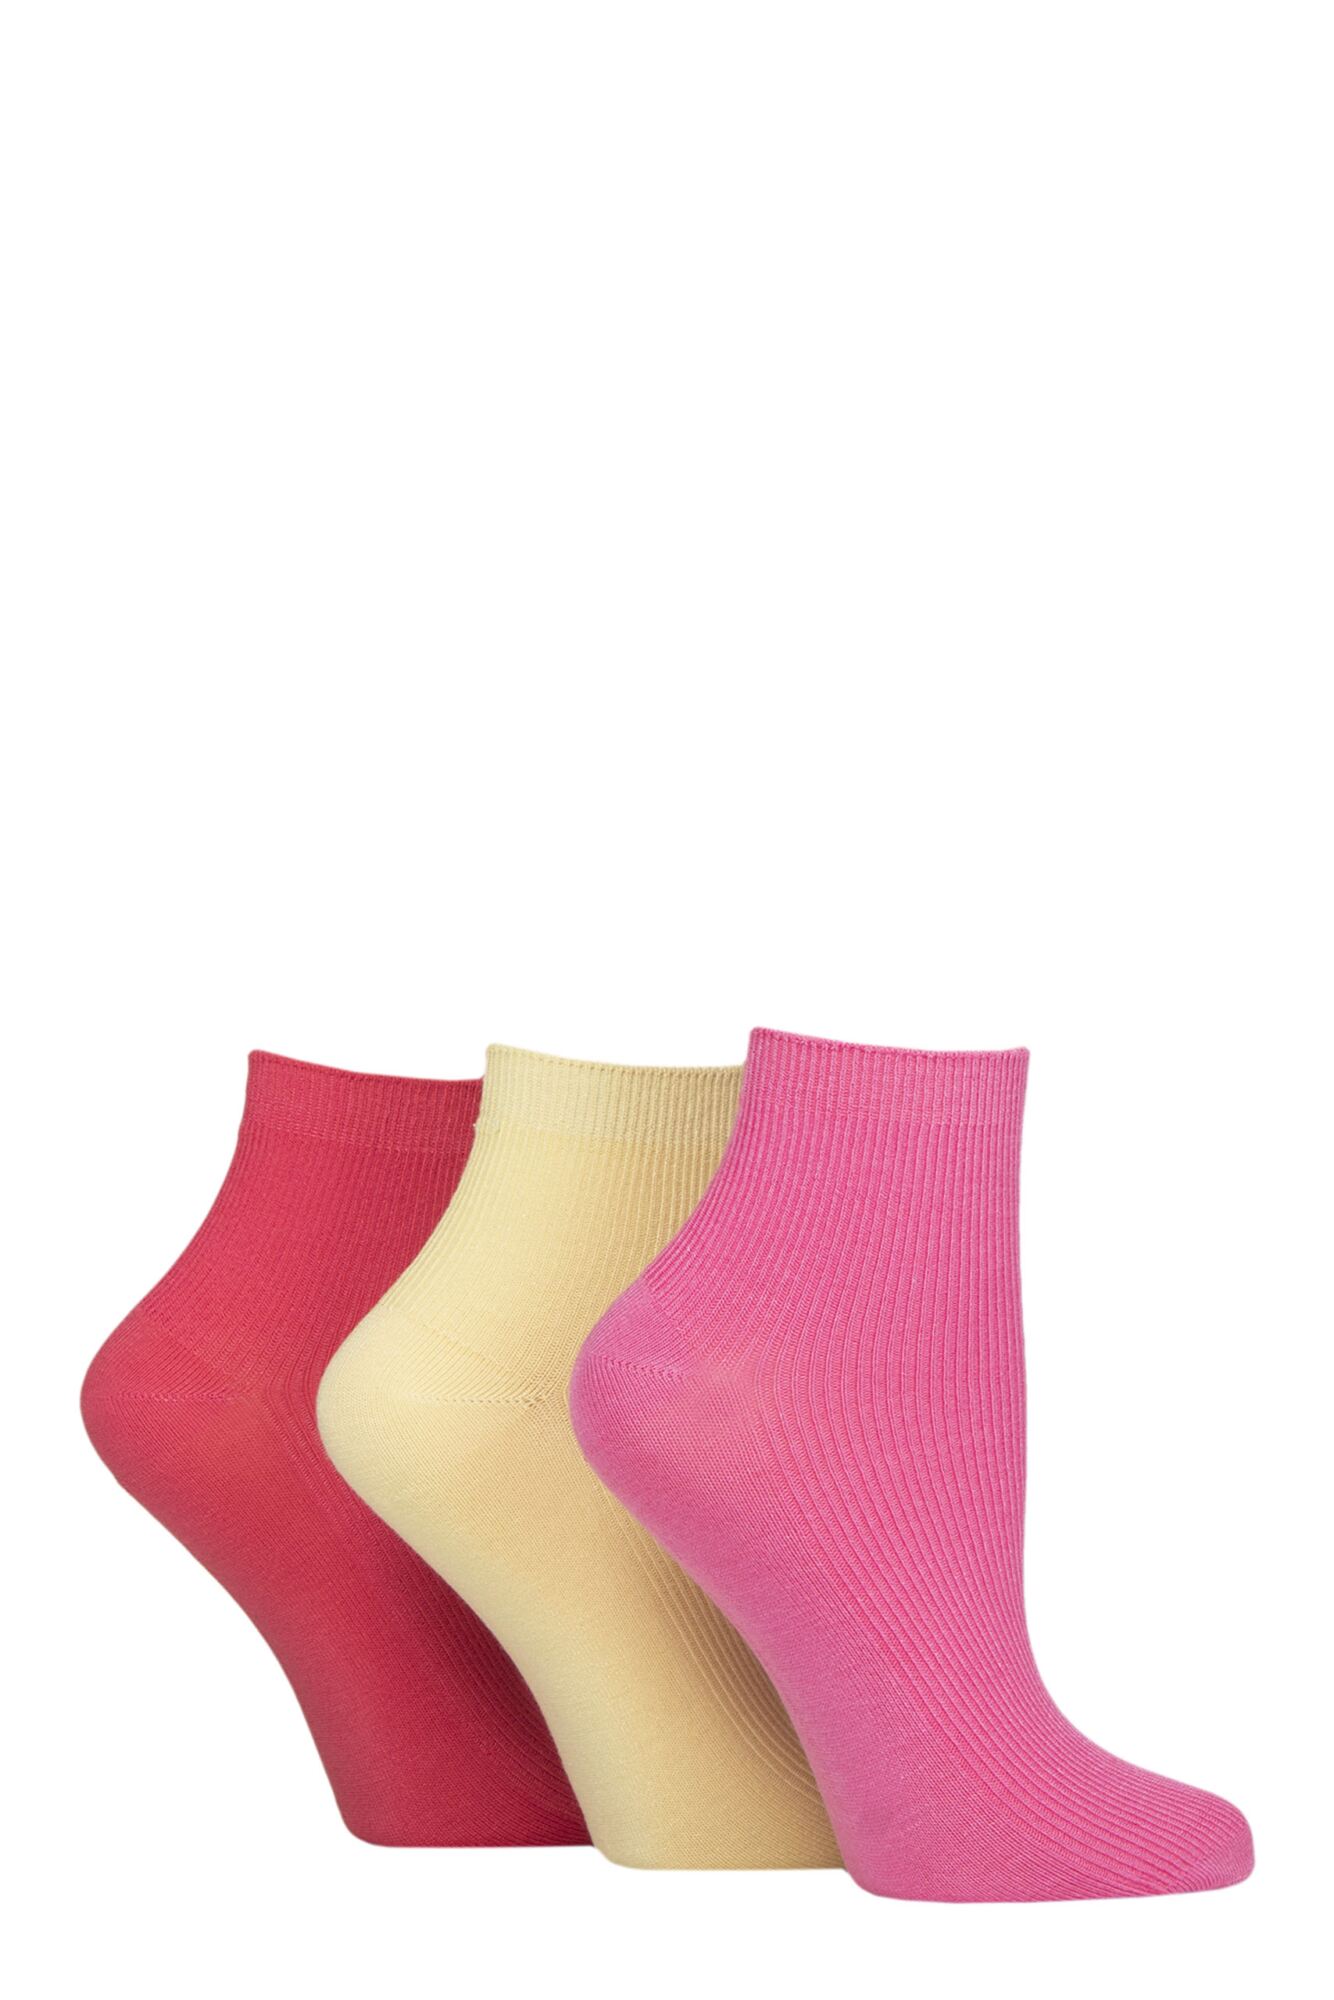 Ladies 3 Pair Elle Ribbed Bamboo Ankle Socks from SockShop